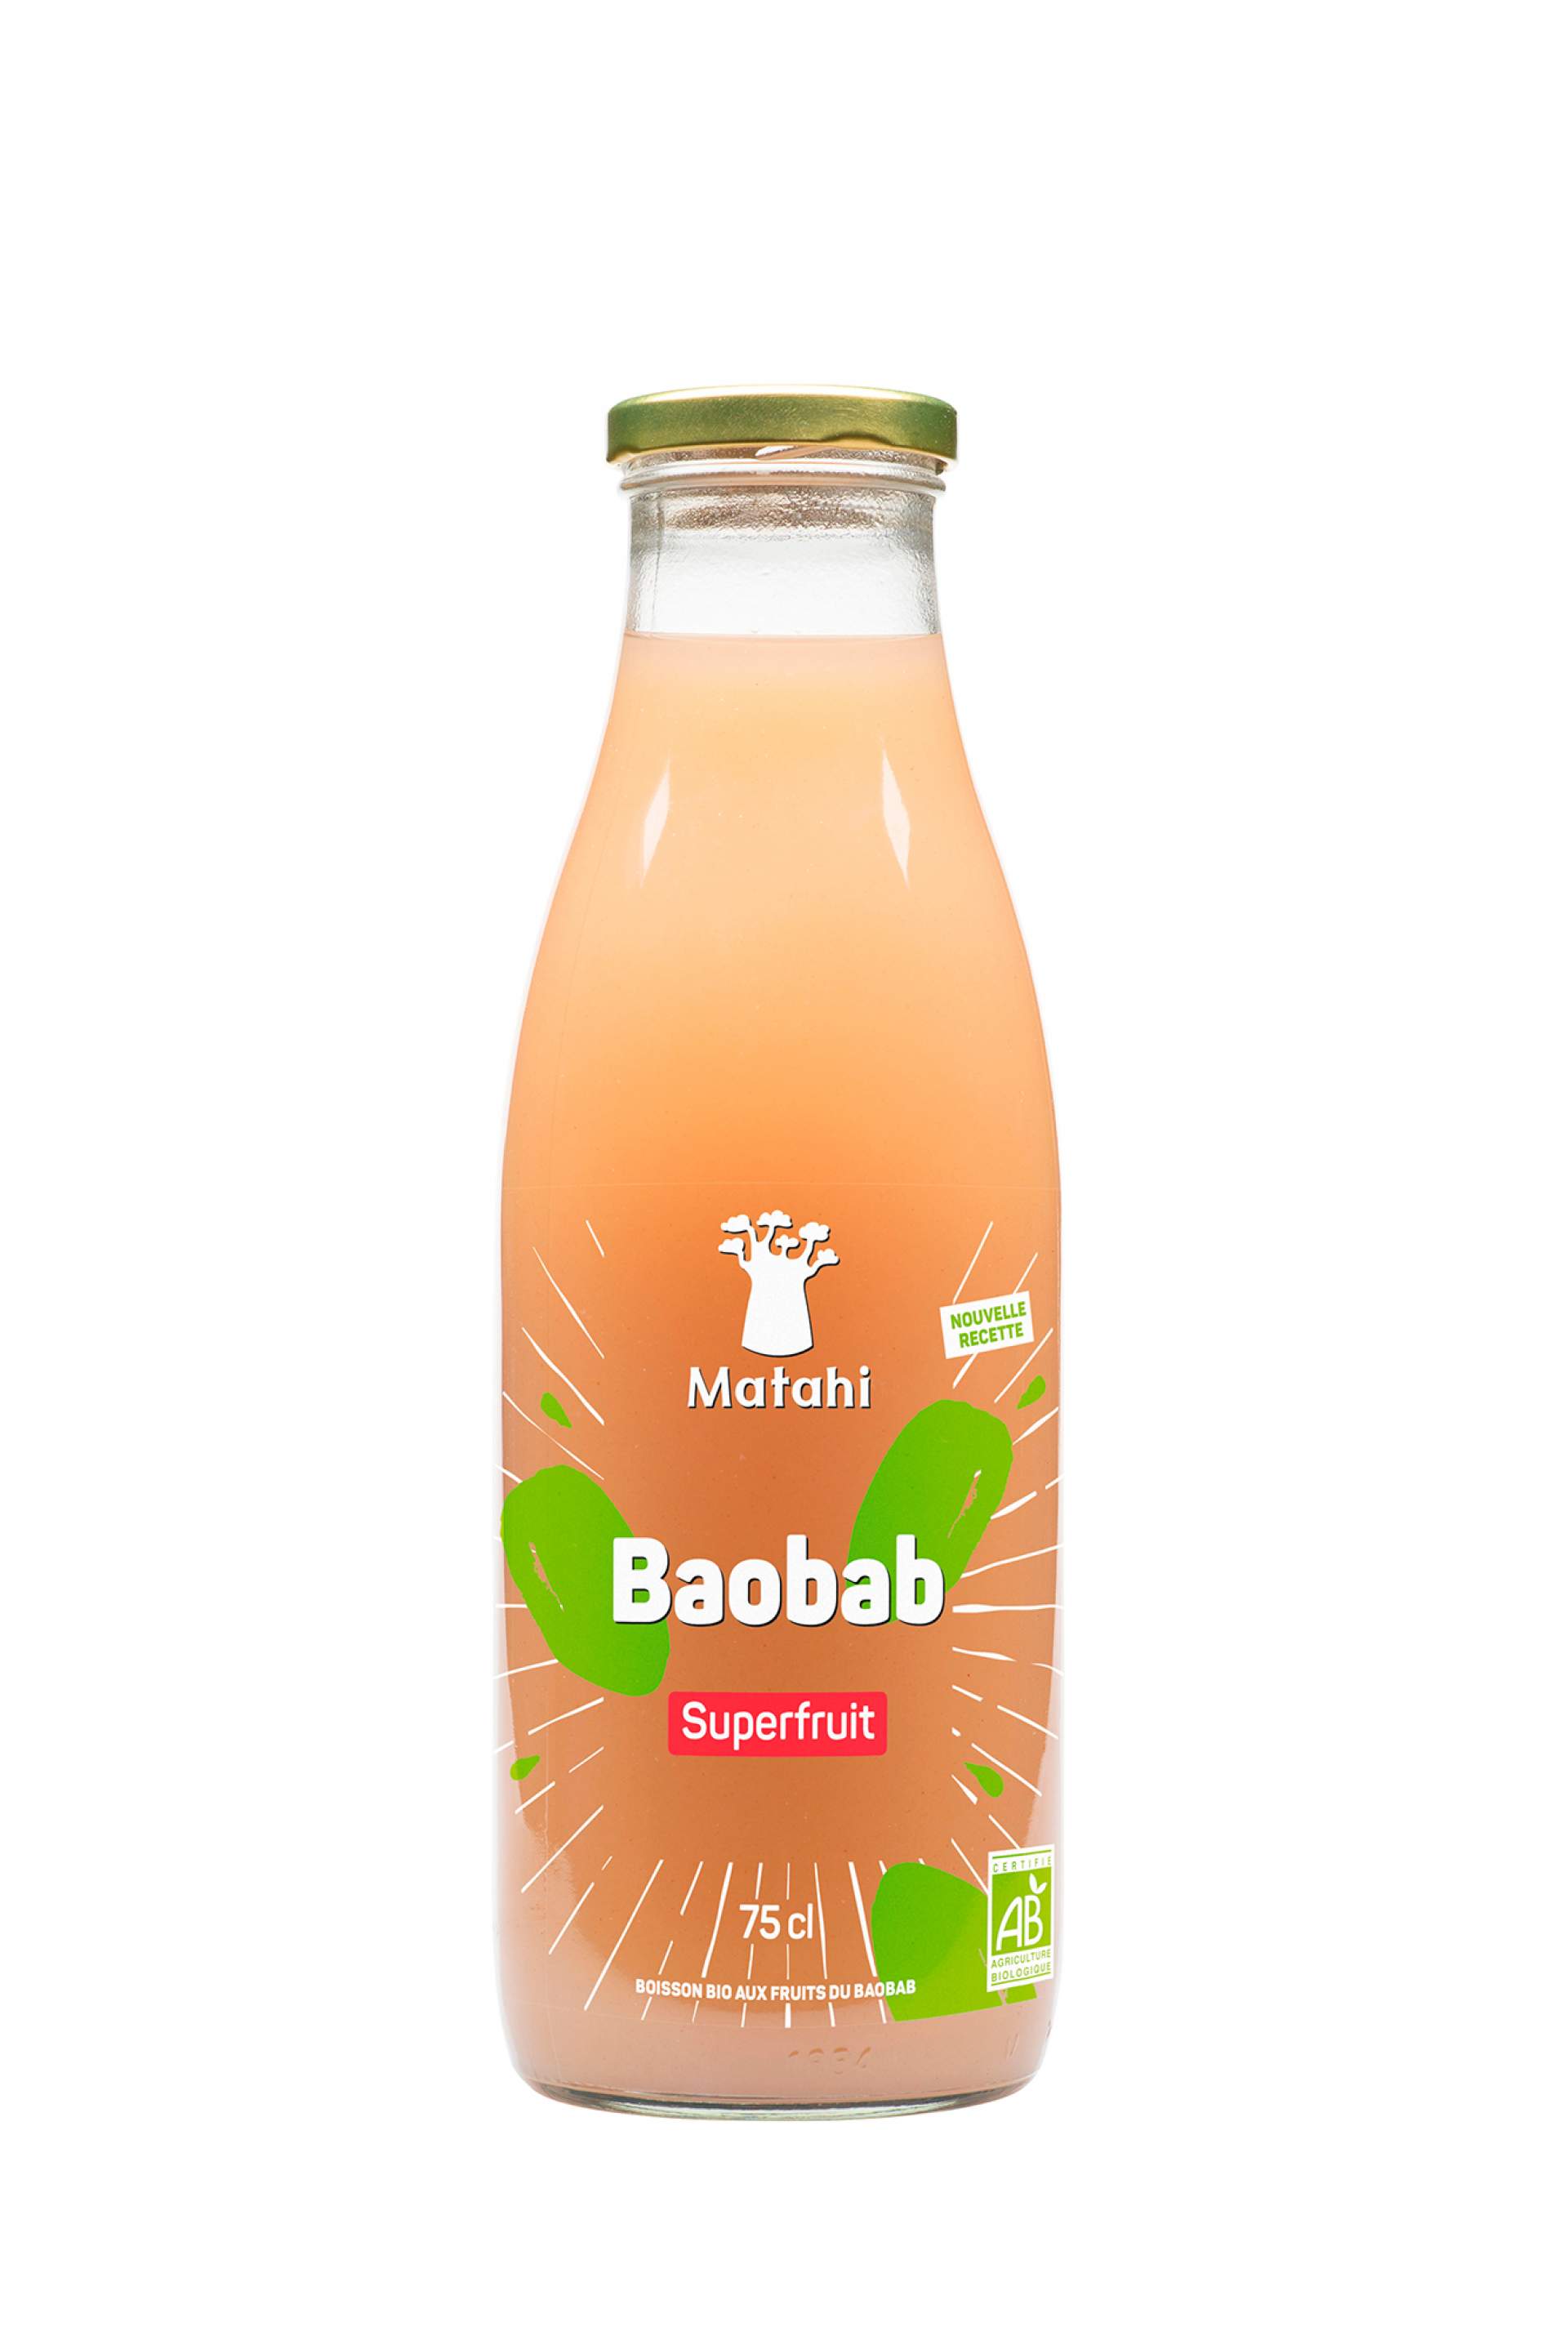 Création du packaging de la boisson baobab